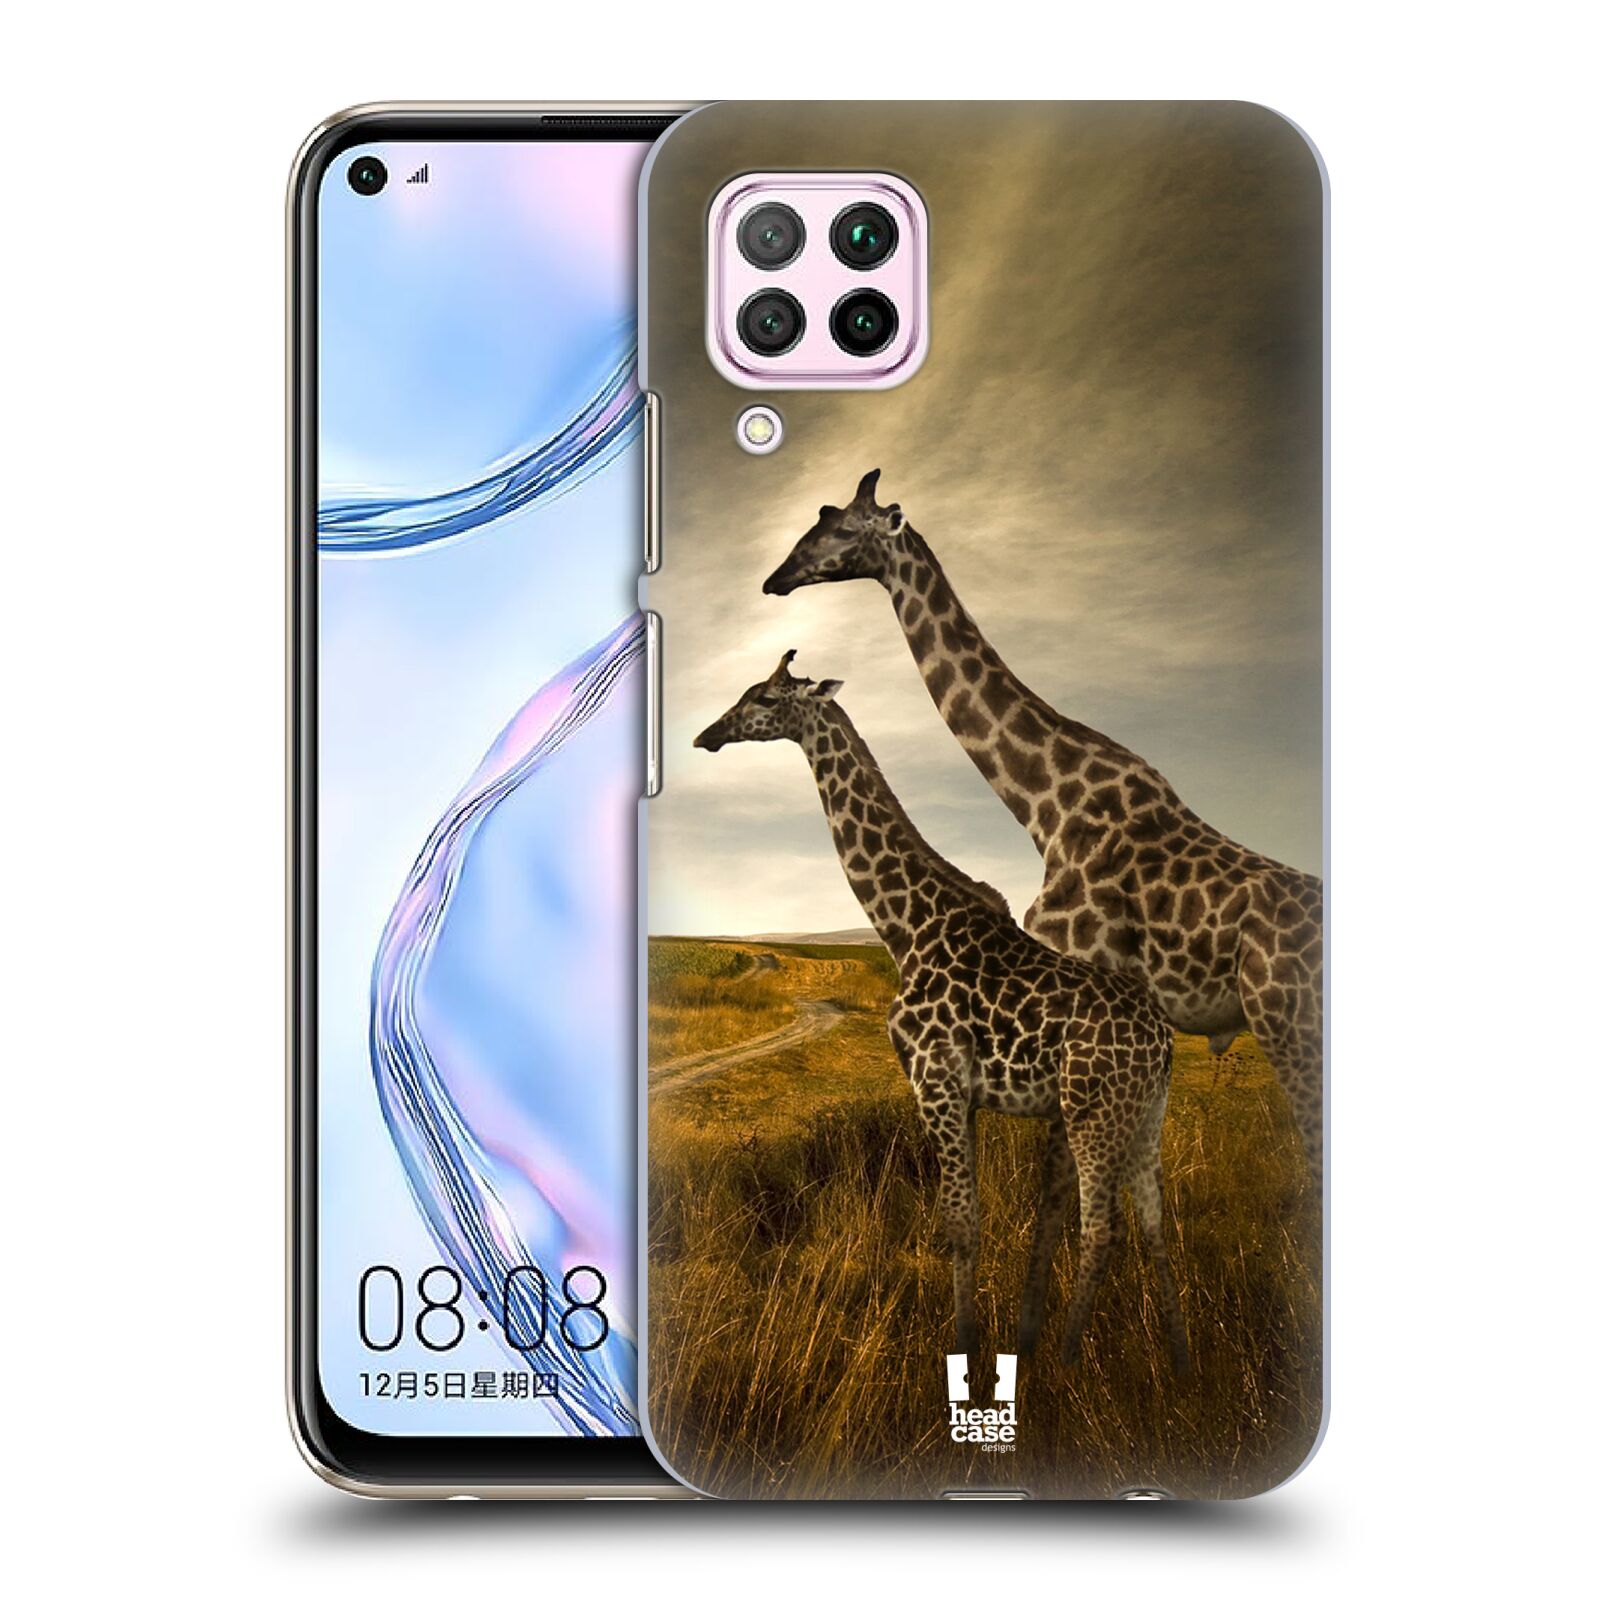 Zadní obal pro mobil Huawei P40 LITE - HEAD CASE - Svět zvířat žirafy